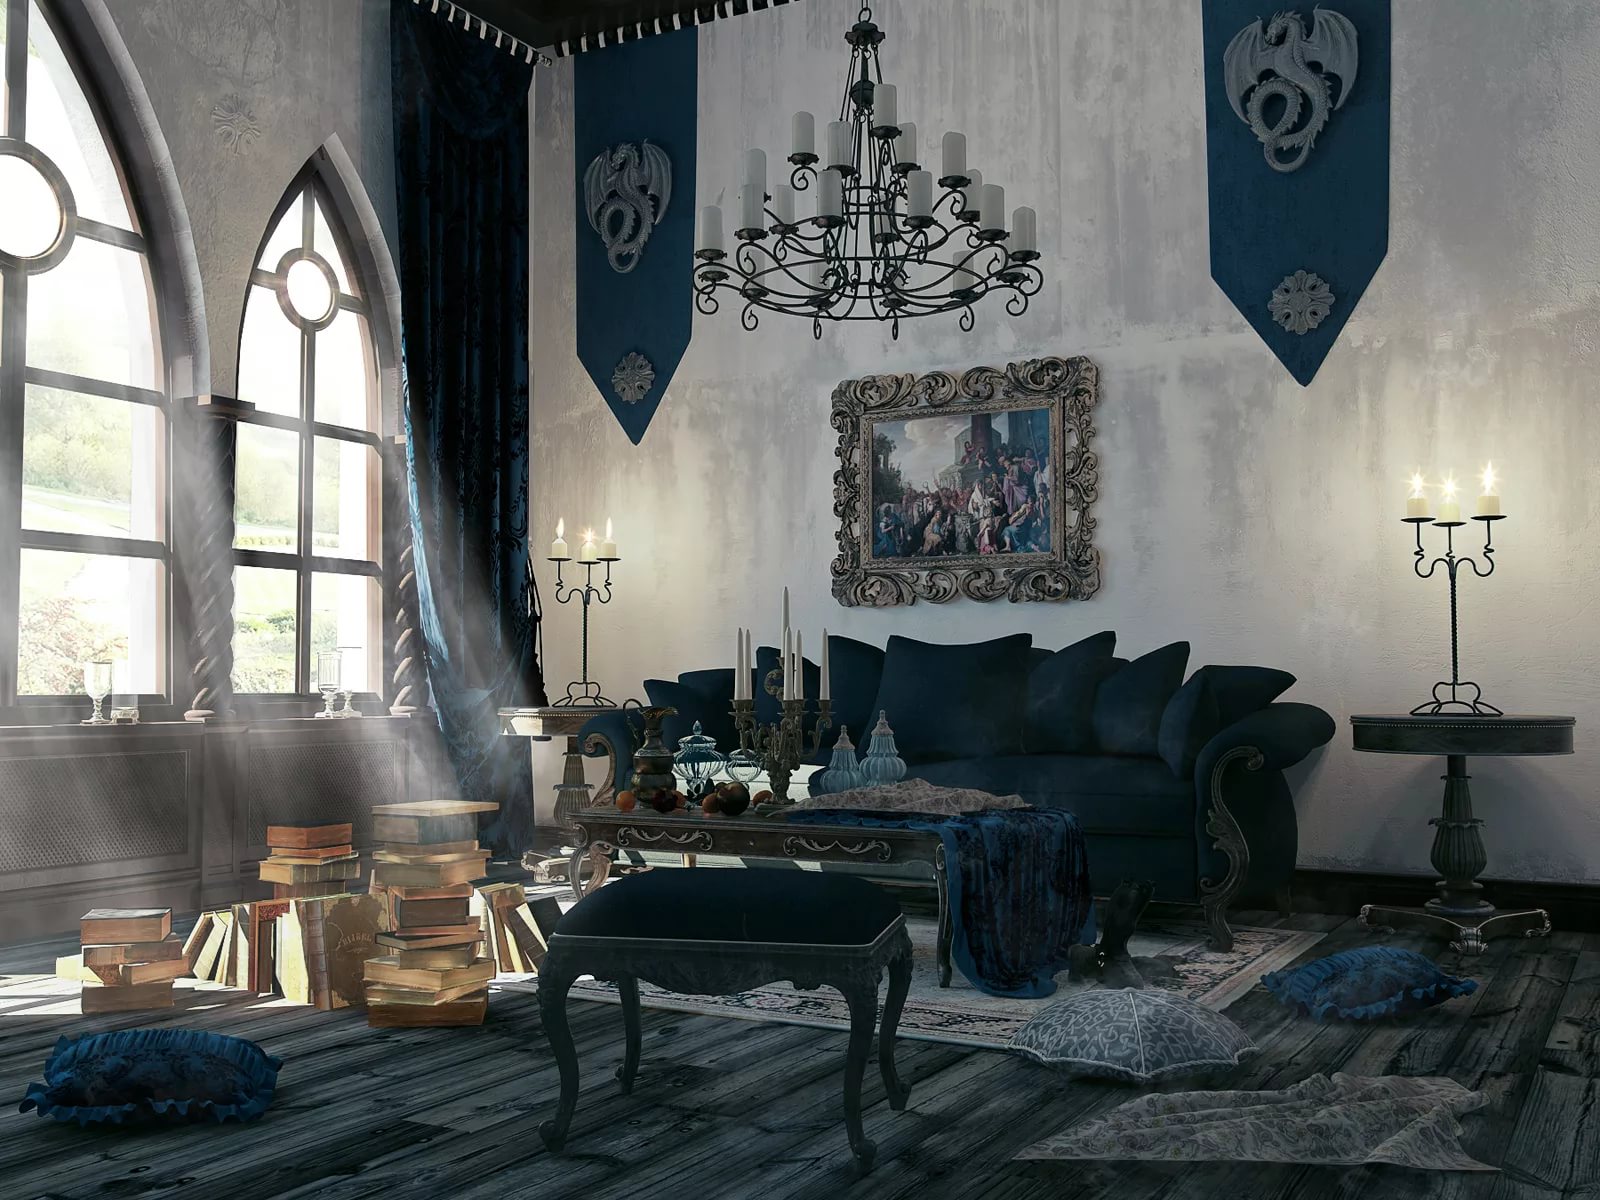 Gothic living room dimmed lighting